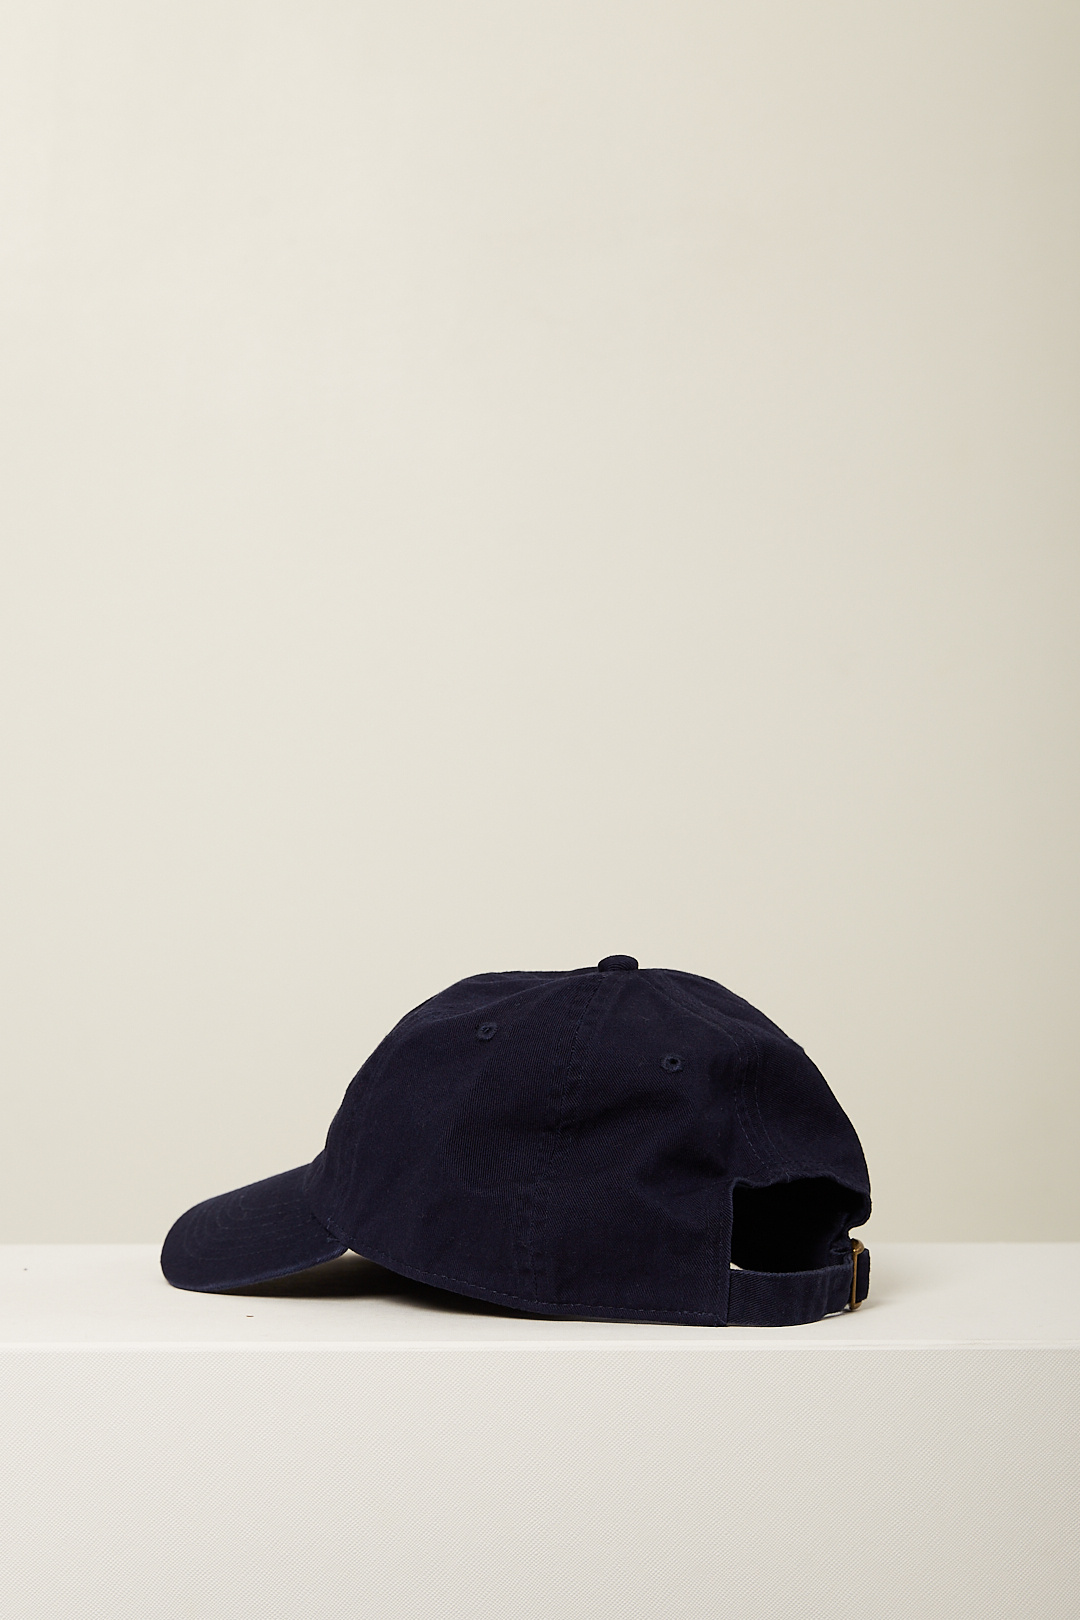 Denimist - Denimist baseball hat